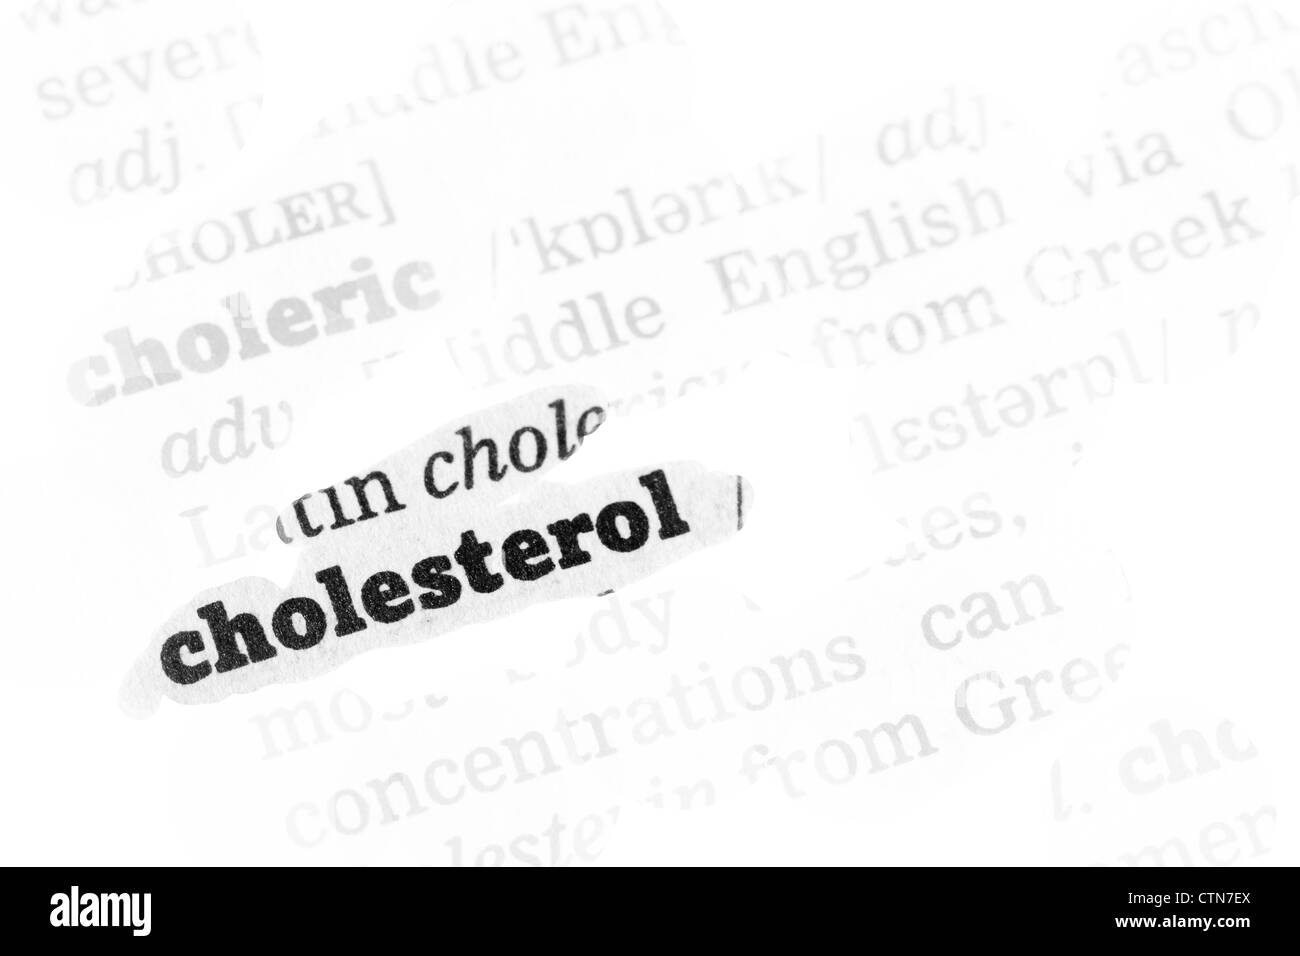 Dizionario di colesterolo definizione unica parola con soft focus Foto Stock